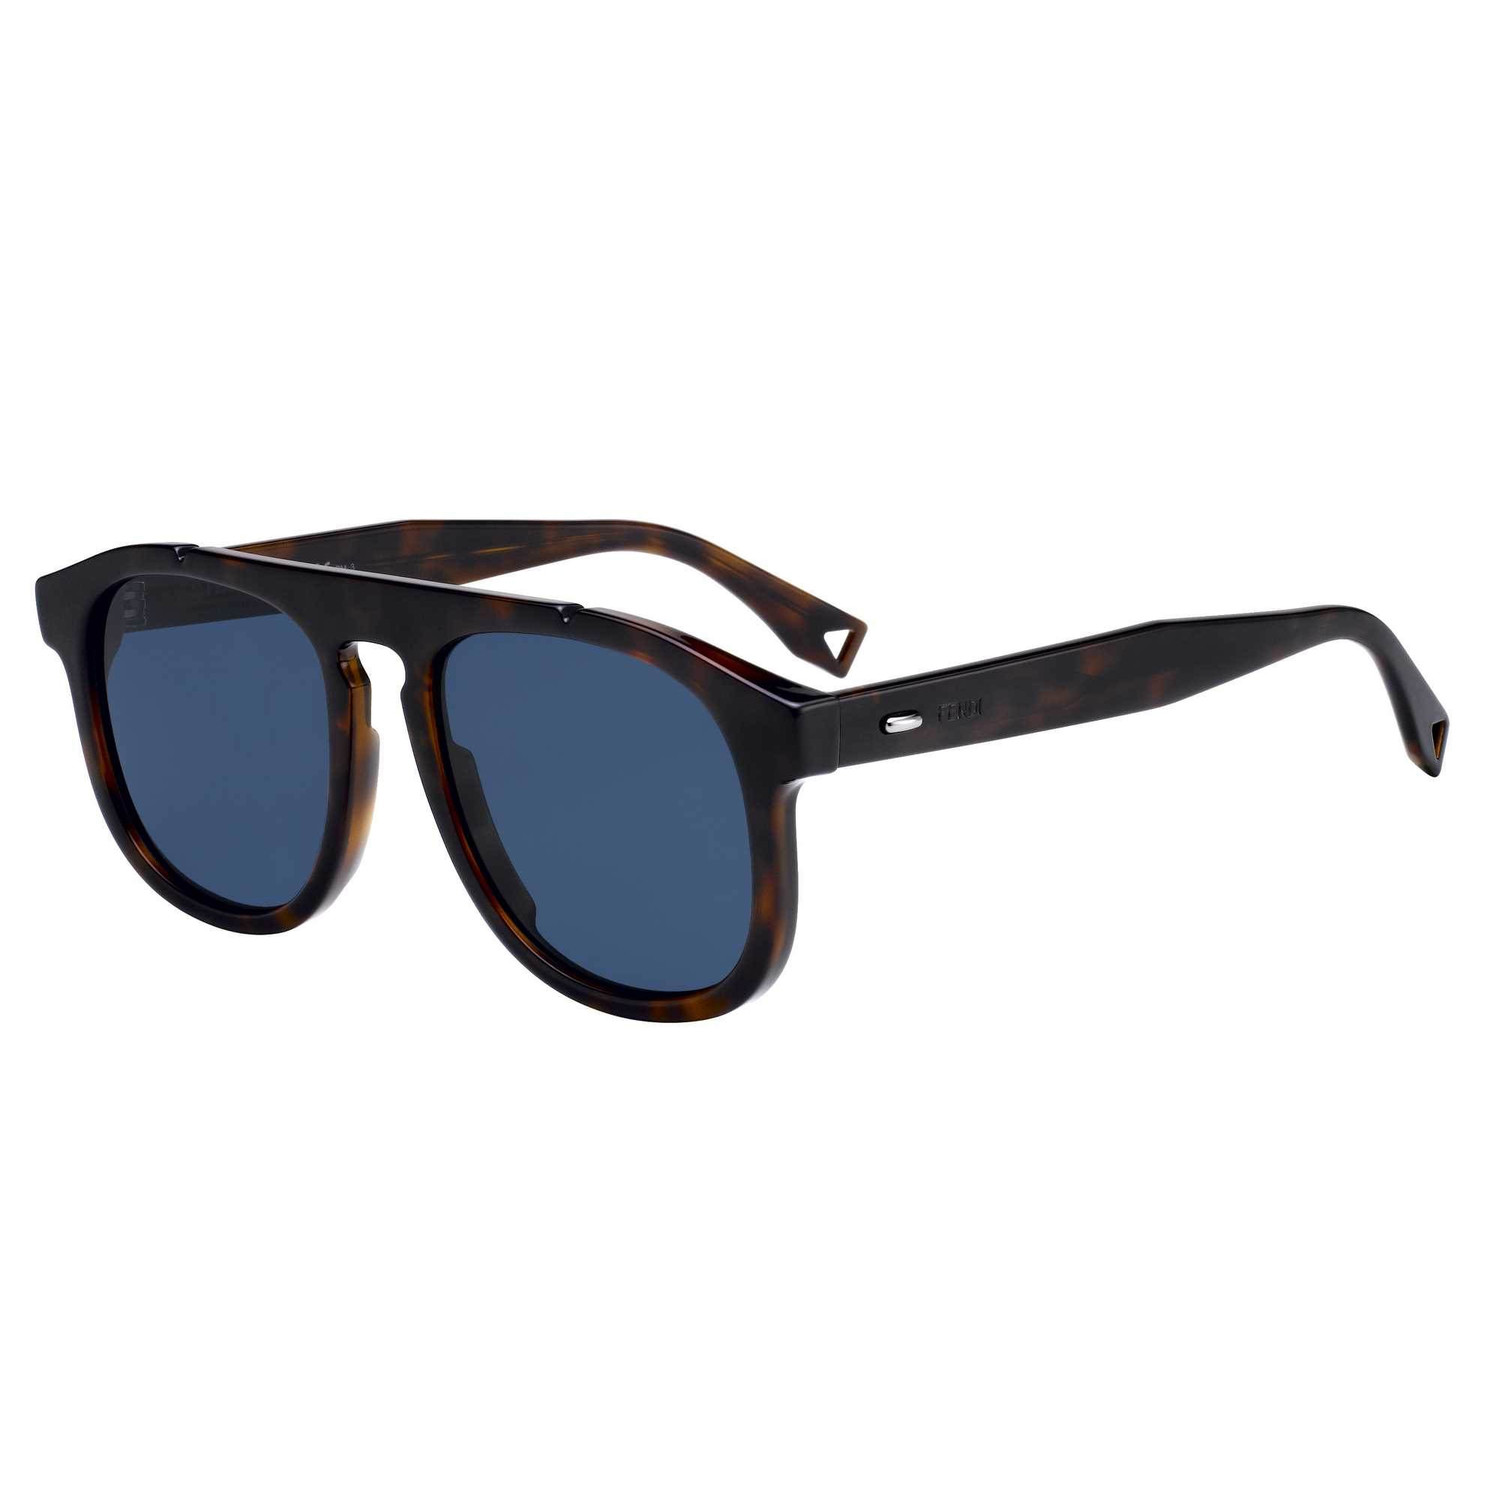 Fendi Men's Sunglasses // Dark Havana + Blue - Fendi, Prada, Dior ...